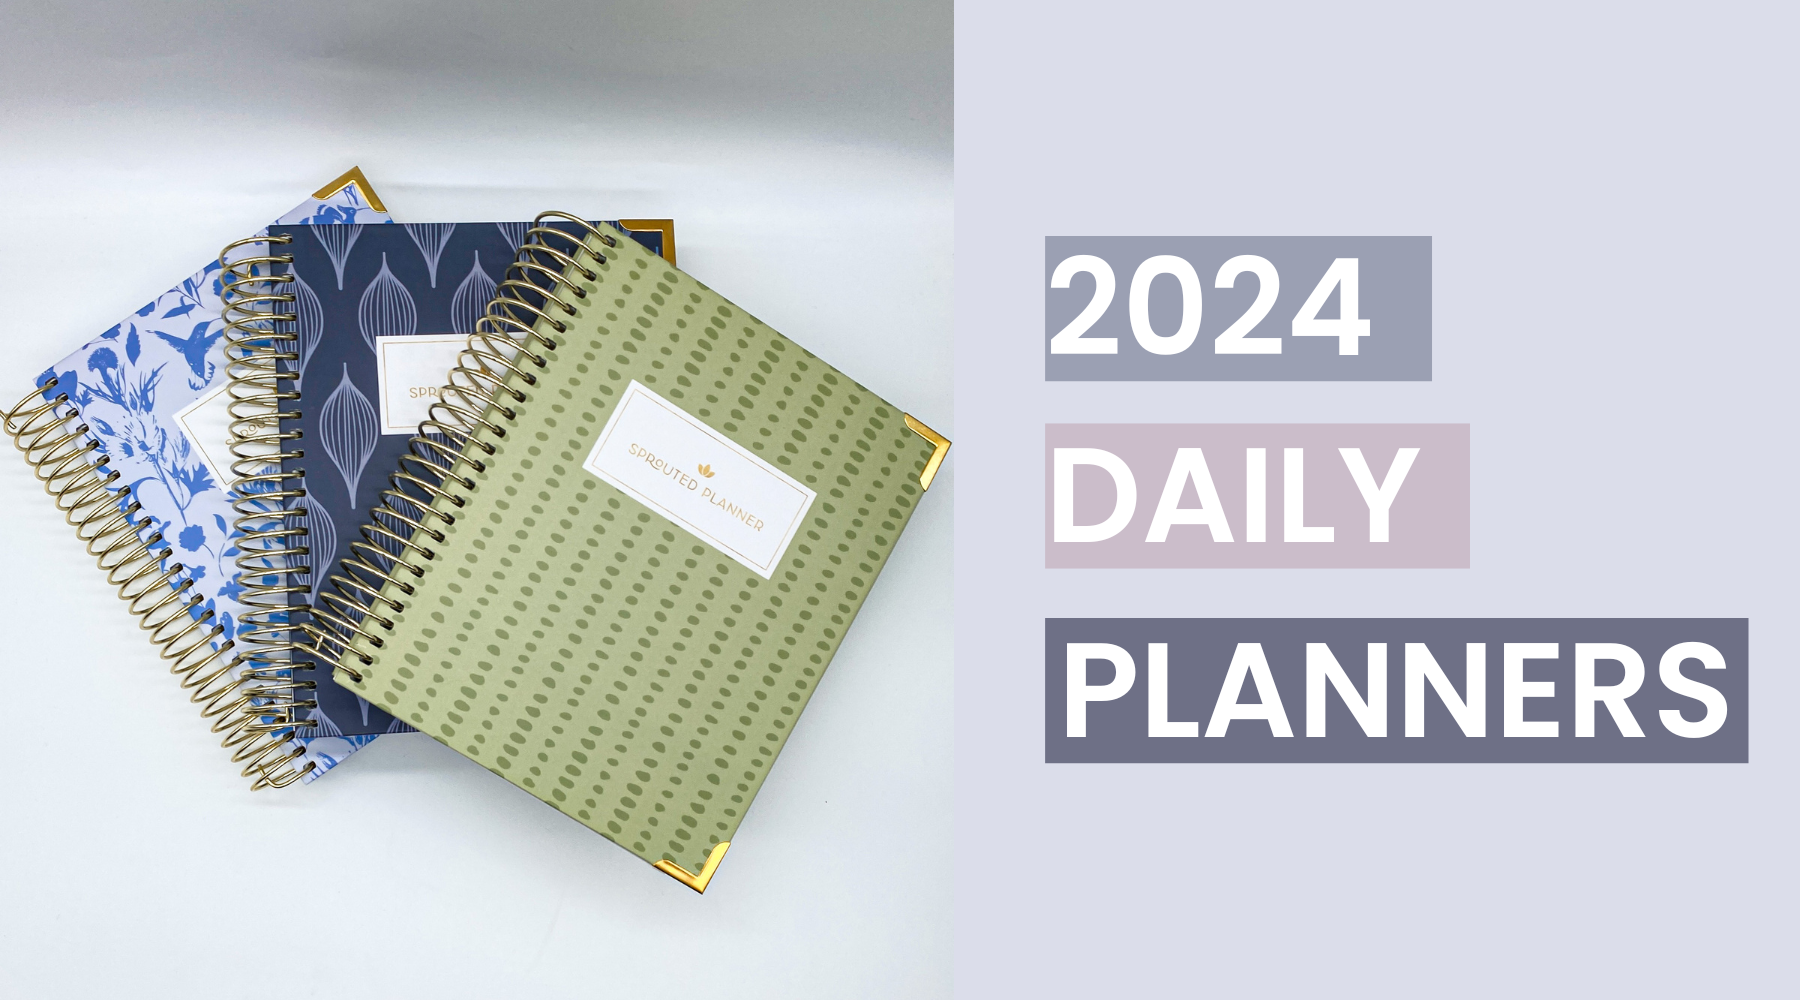 2024 Daily Planner Rundown